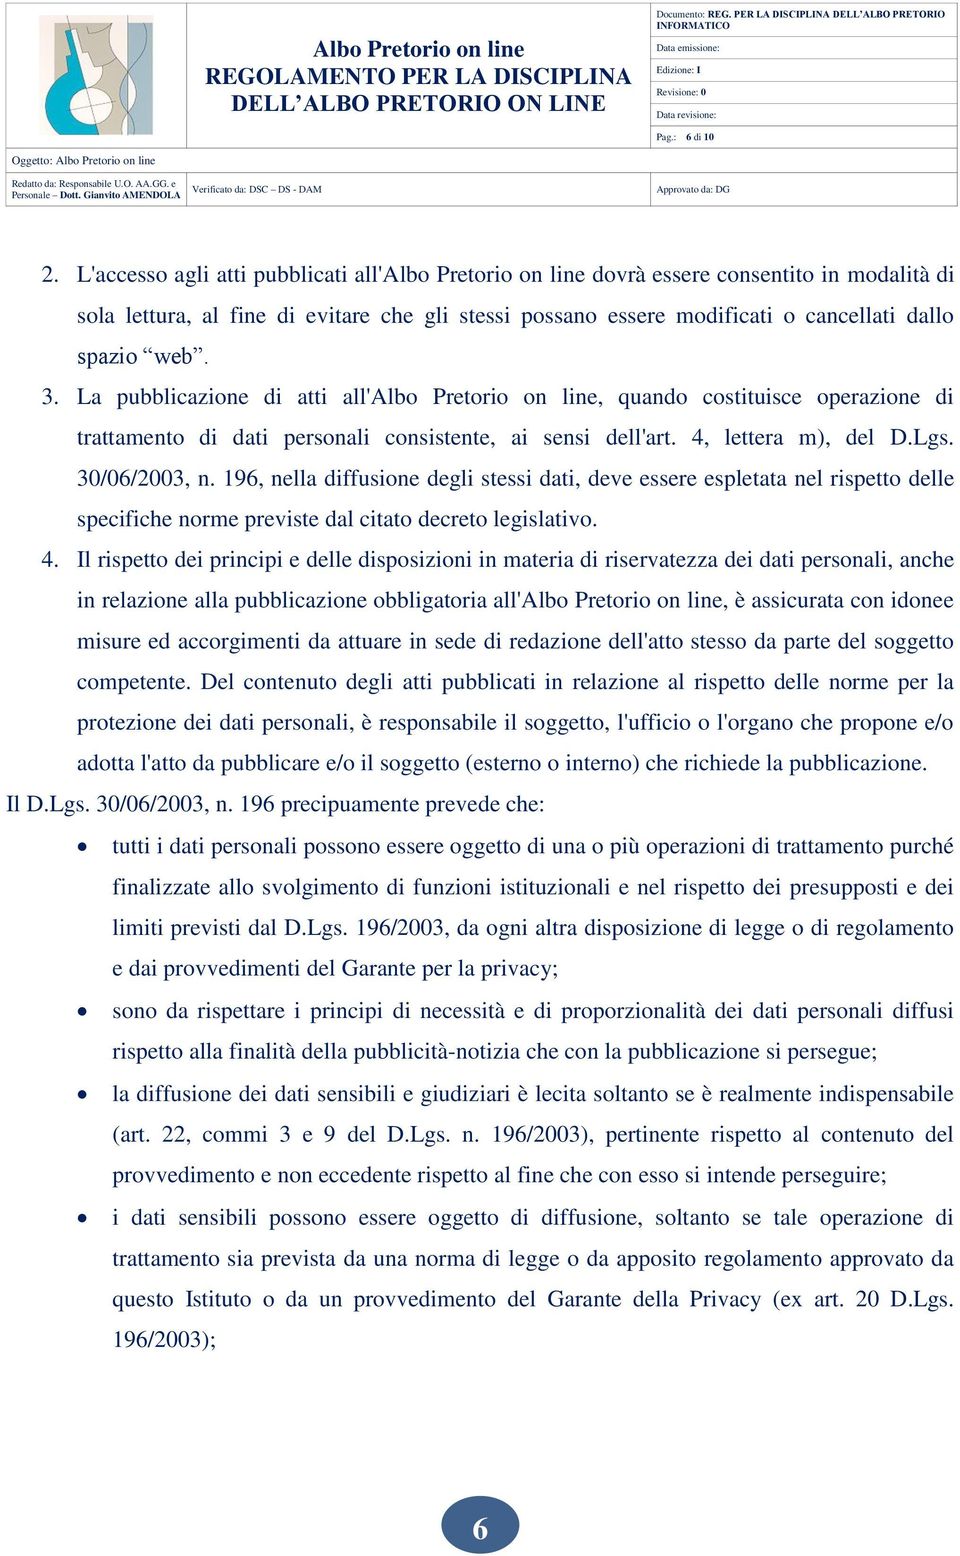 3. La pubblicazione di atti all'albo Pretorio on line, quando costituisce operazione di trattamento di dati personali consistente, ai sensi dell'art. 4, lettera m), del D.Lgs. 30/06/2003, n.